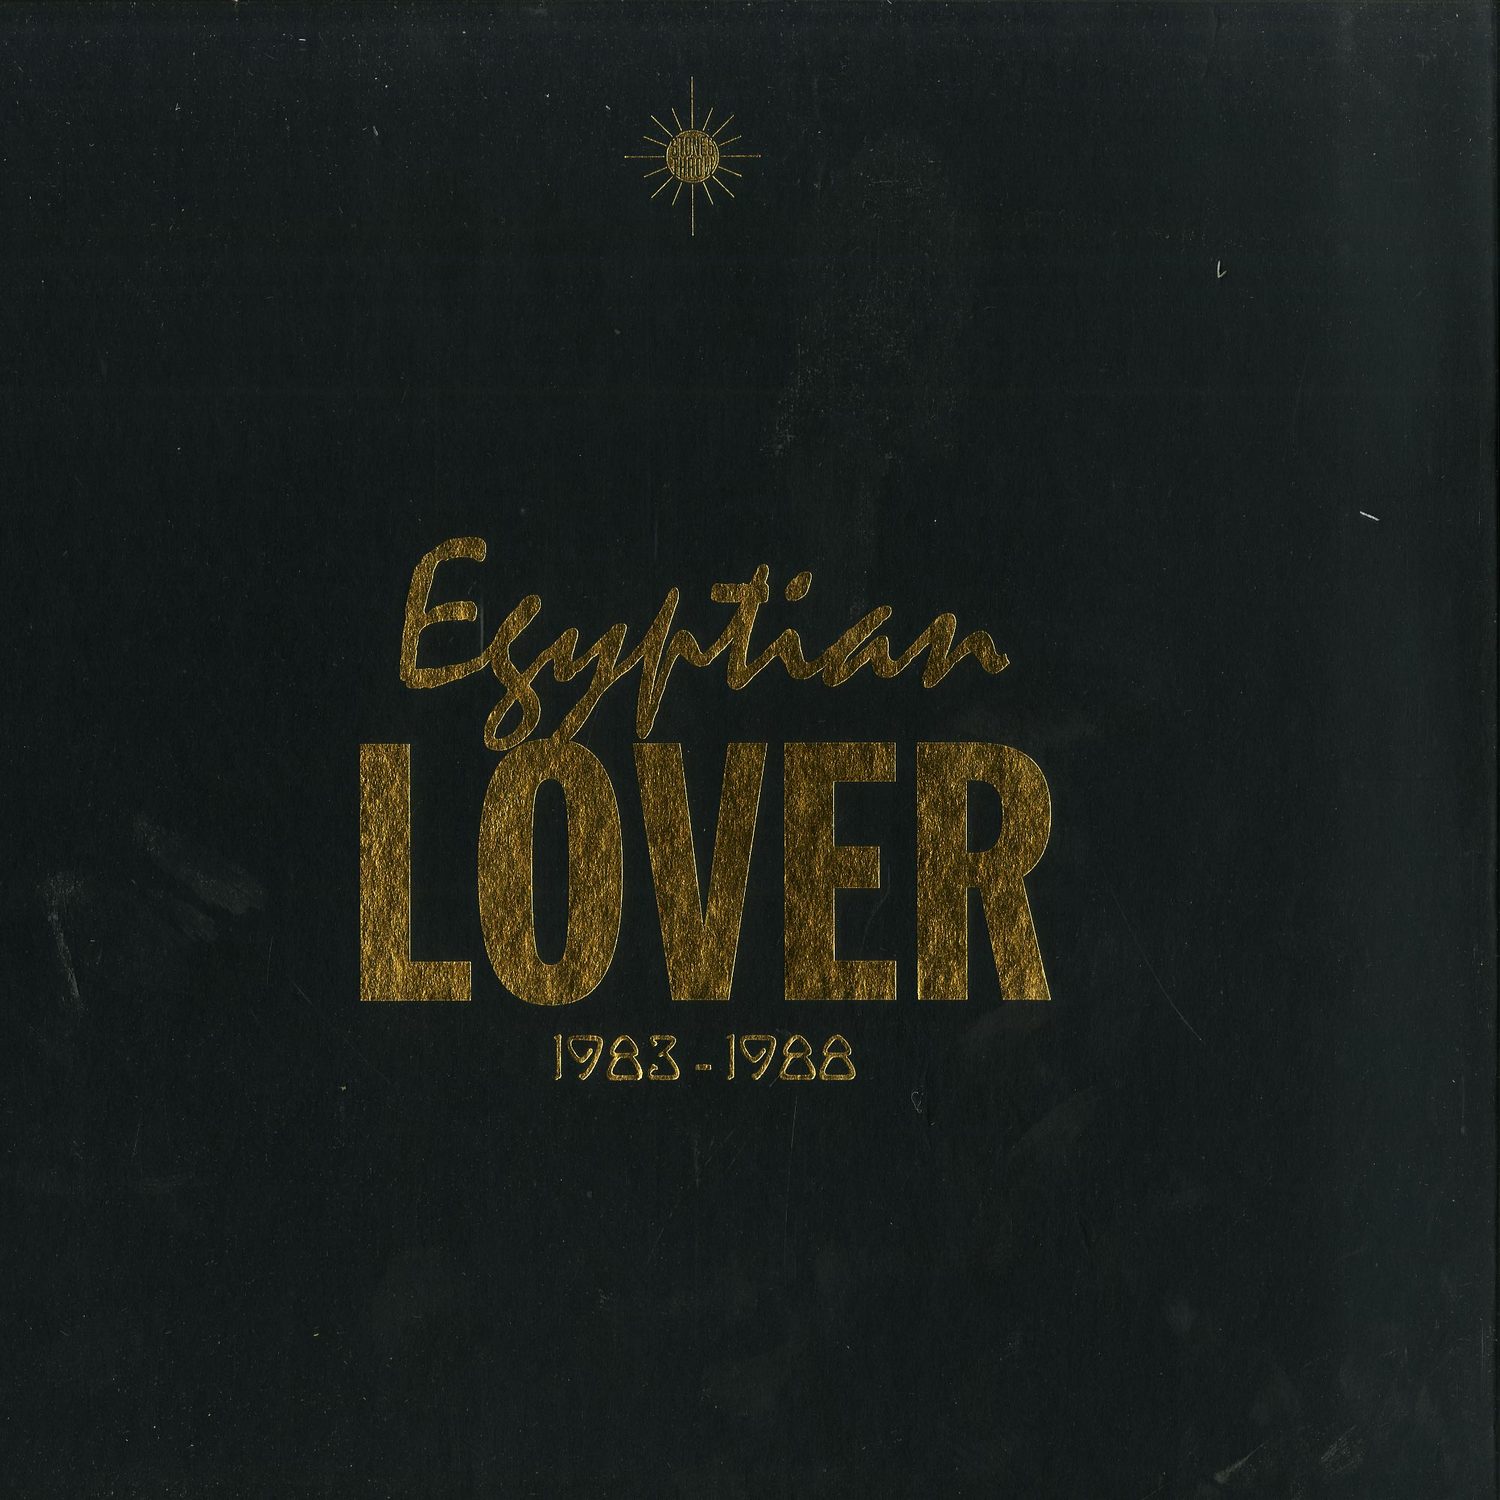 Egyptian Lover - 1983-1988 